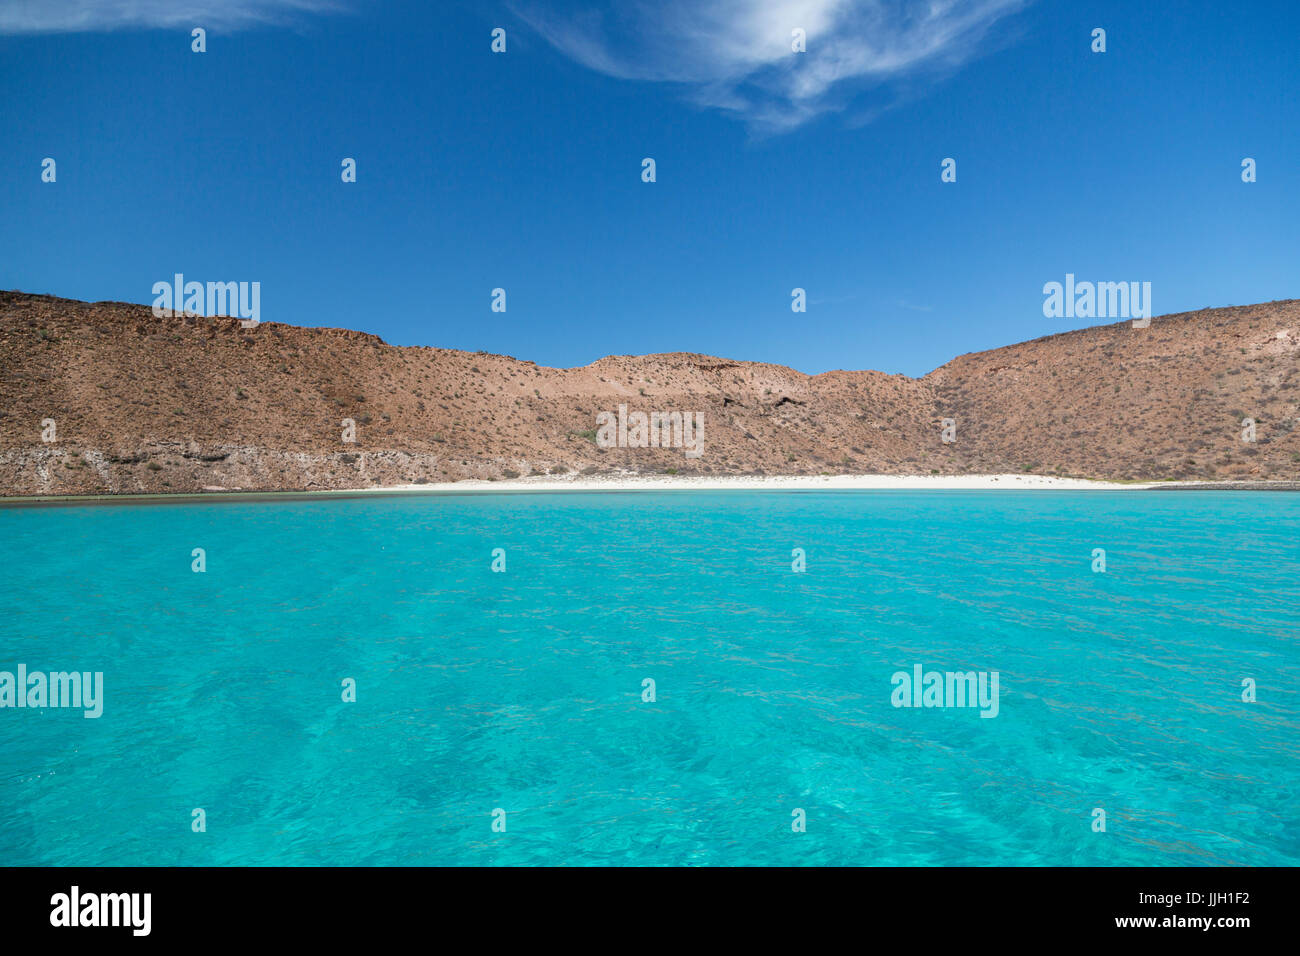 Isola di Espiritu Santo vicino a La Paz, Messico, ha molti immacolate spiagge di sabbia bianca in baie nascoste. Foto Stock